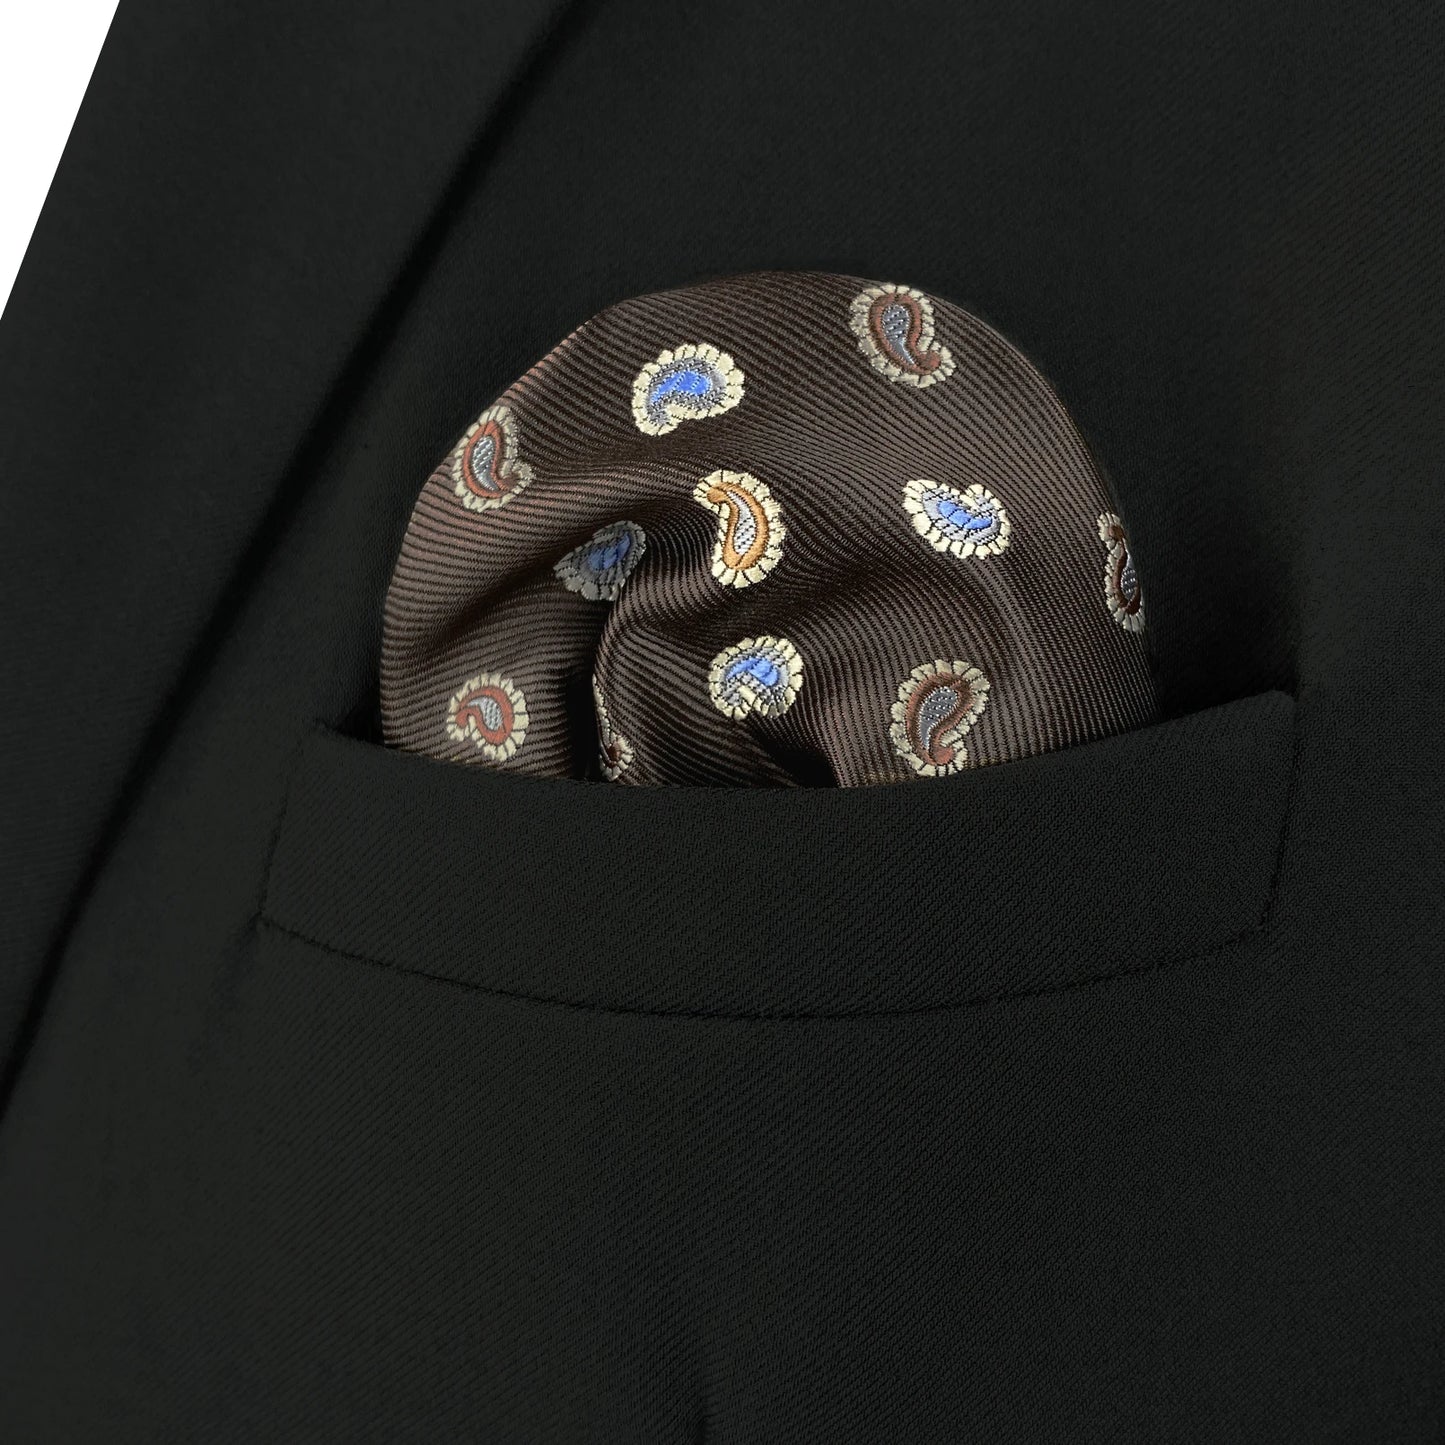 Herren-Taschentuch mit bunten Punkten und purpurnen Streifen